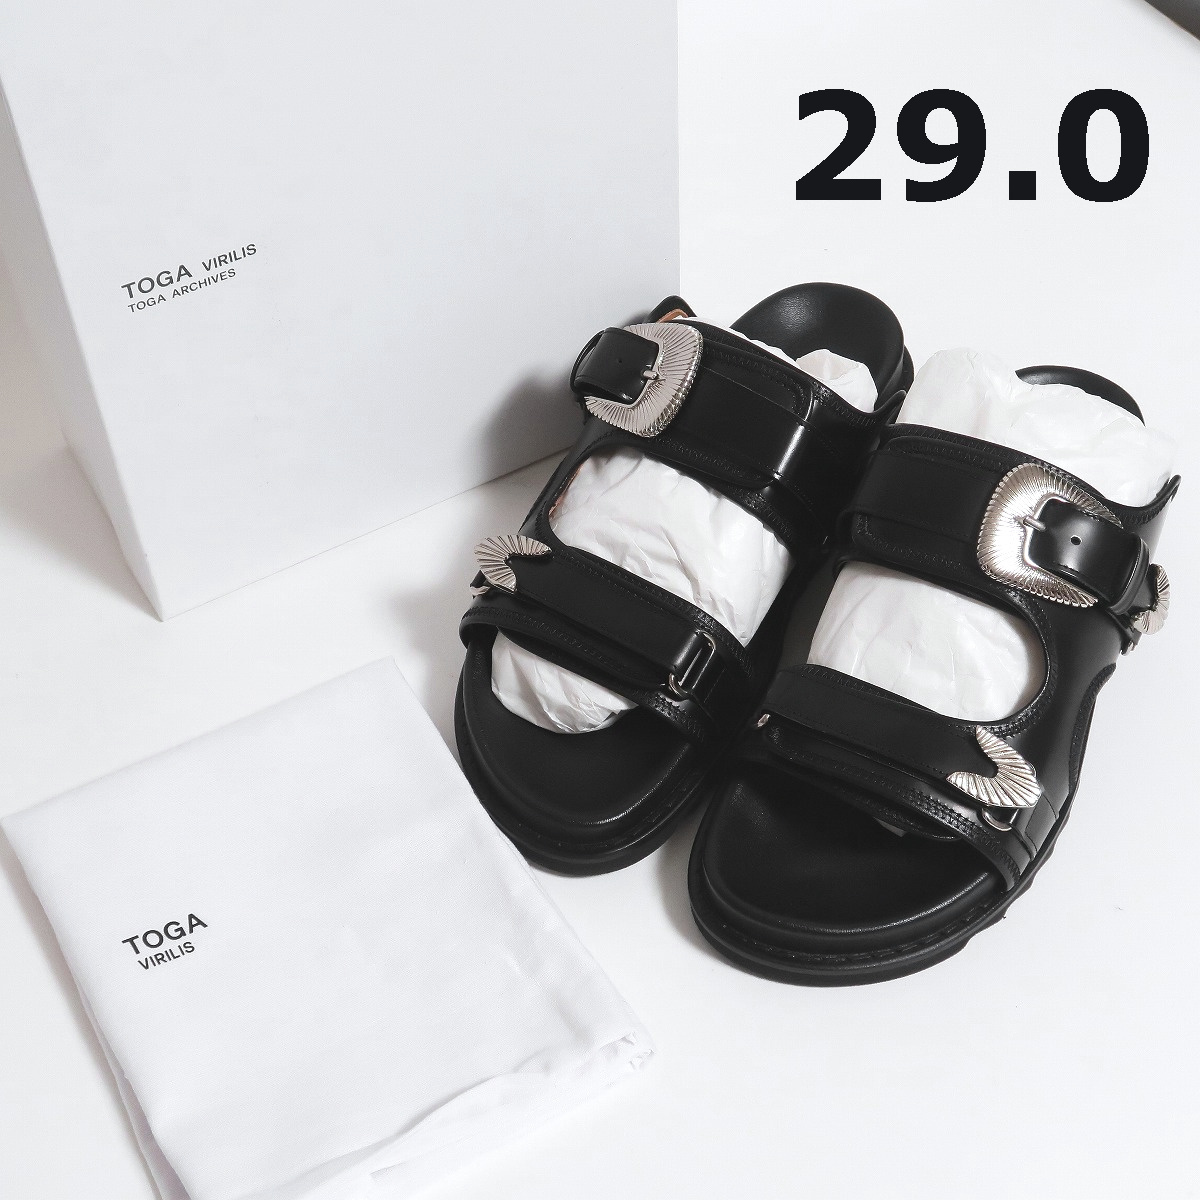 29 新品 TOGA VIRILIS ベルト レザー シャーク サンダル メタル トーガビリリース ブラック メタル バックル